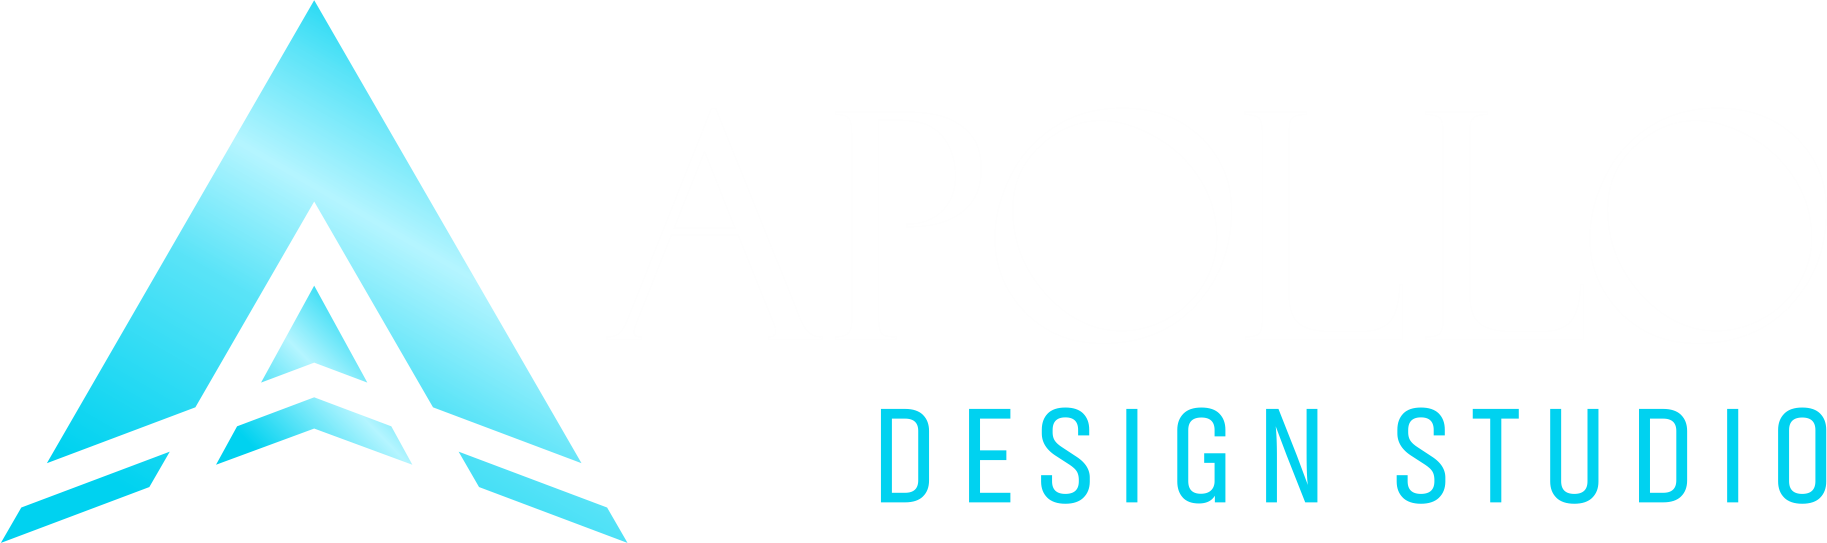 Apollo Design Studio